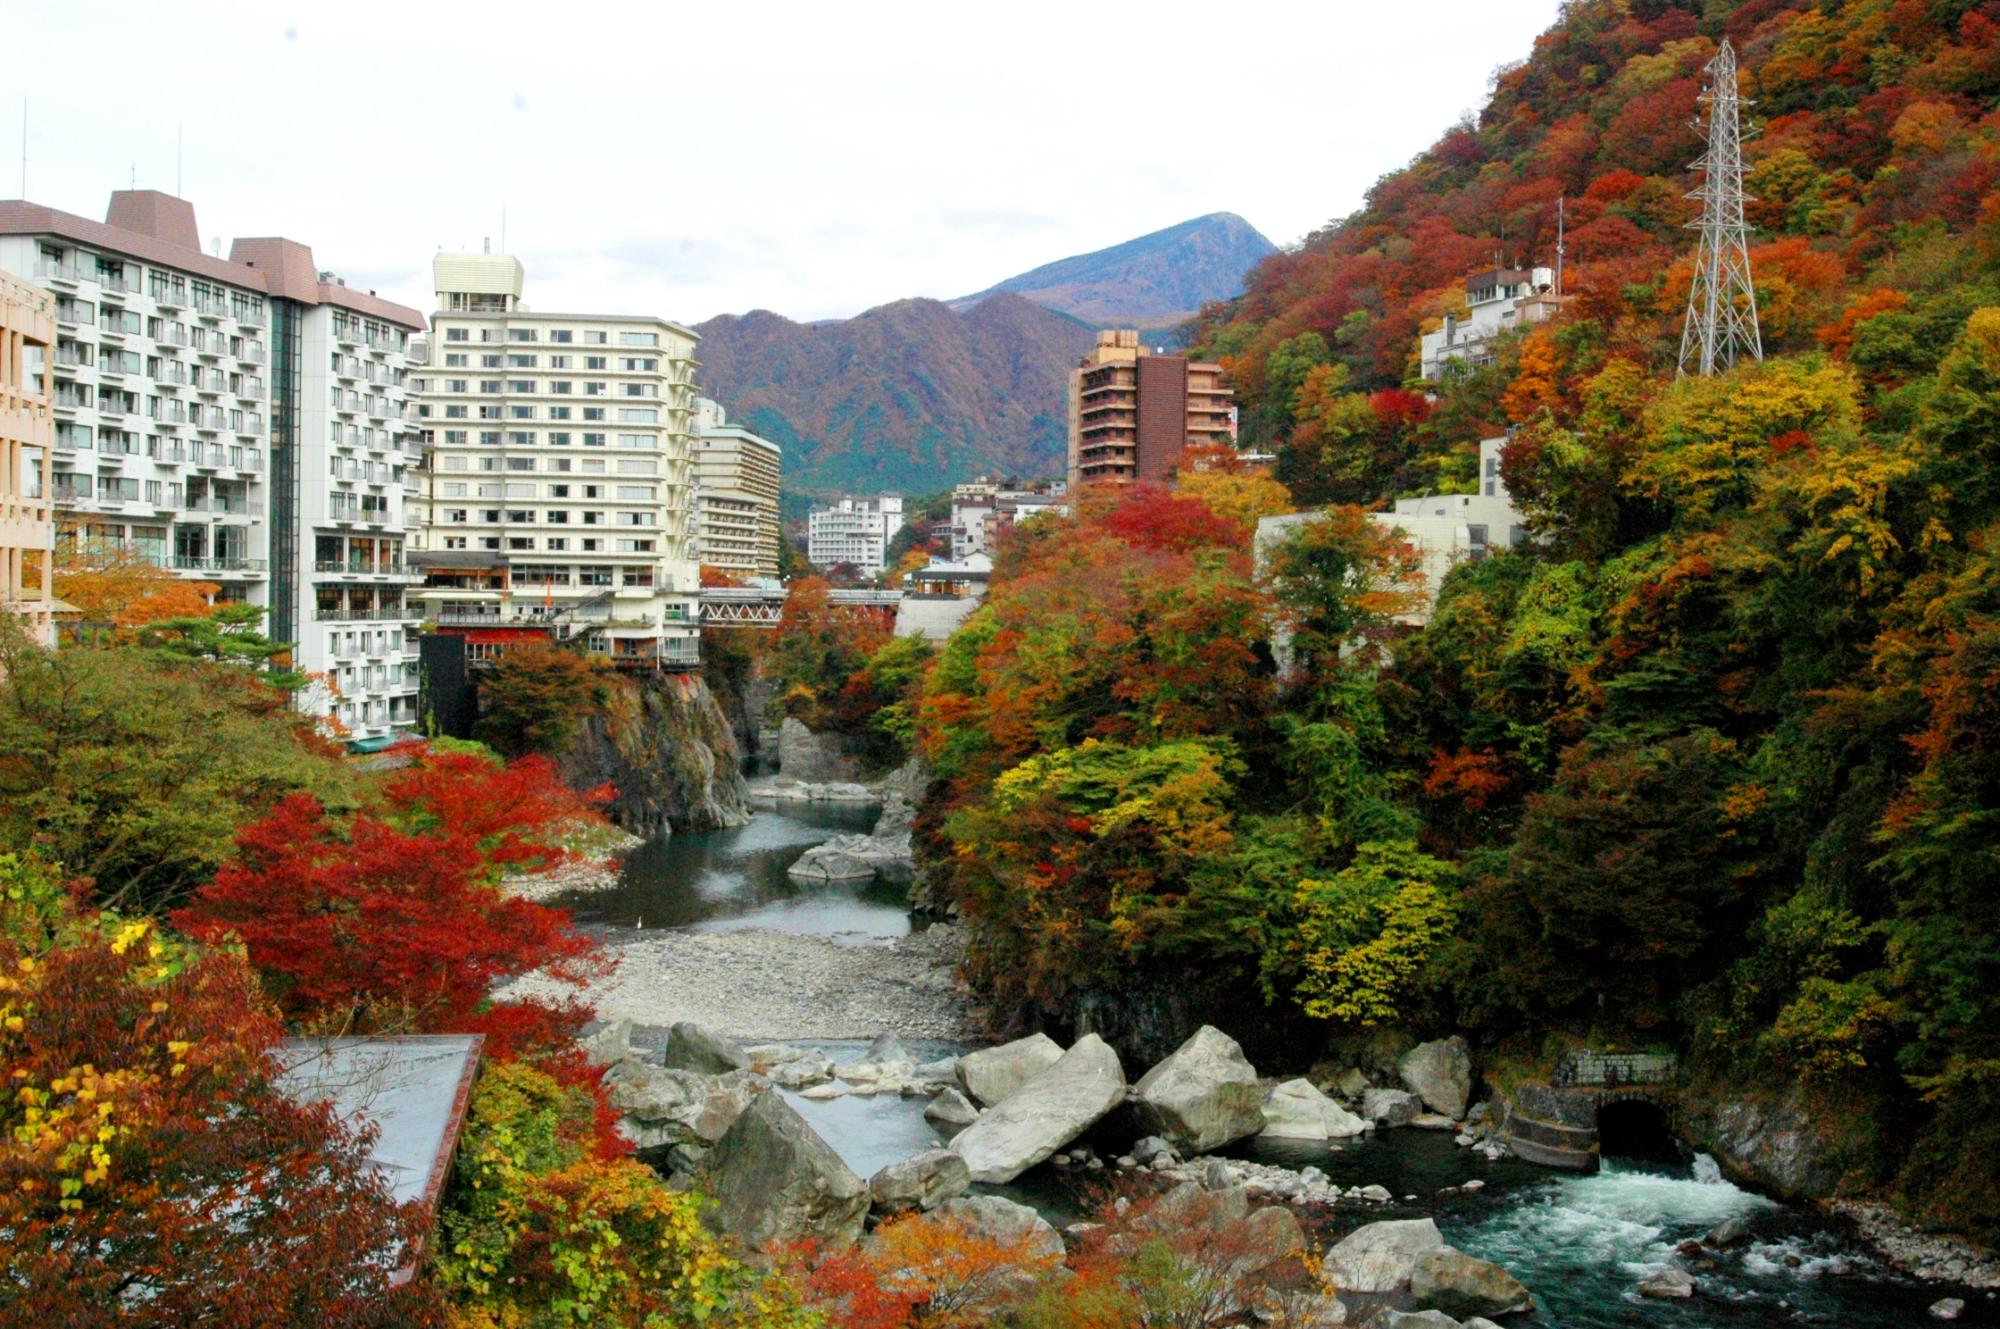 赤や緑、黄色の紅葉の中央に流れている鬼怒川と、川岸に建っている温泉旅館を写した写真